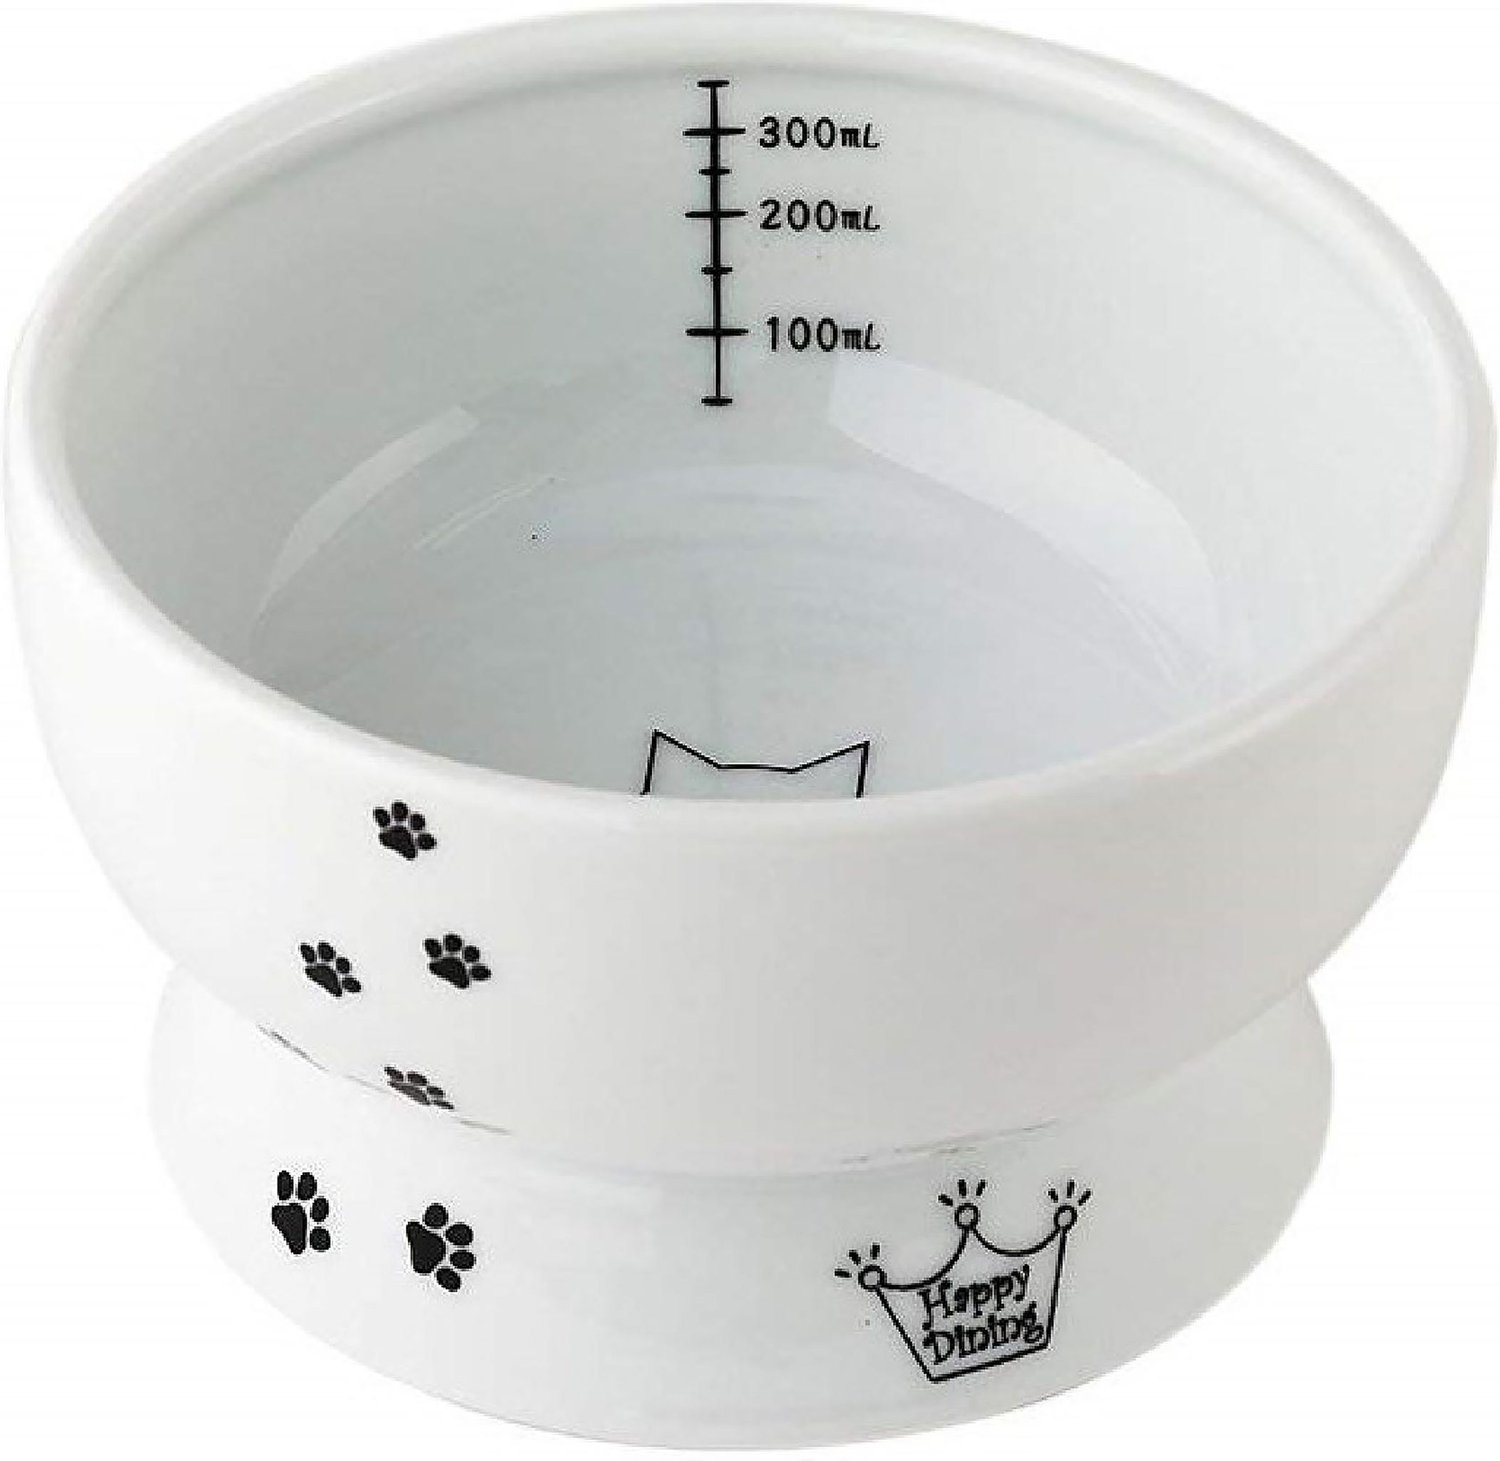 necoichi raised cat bowl